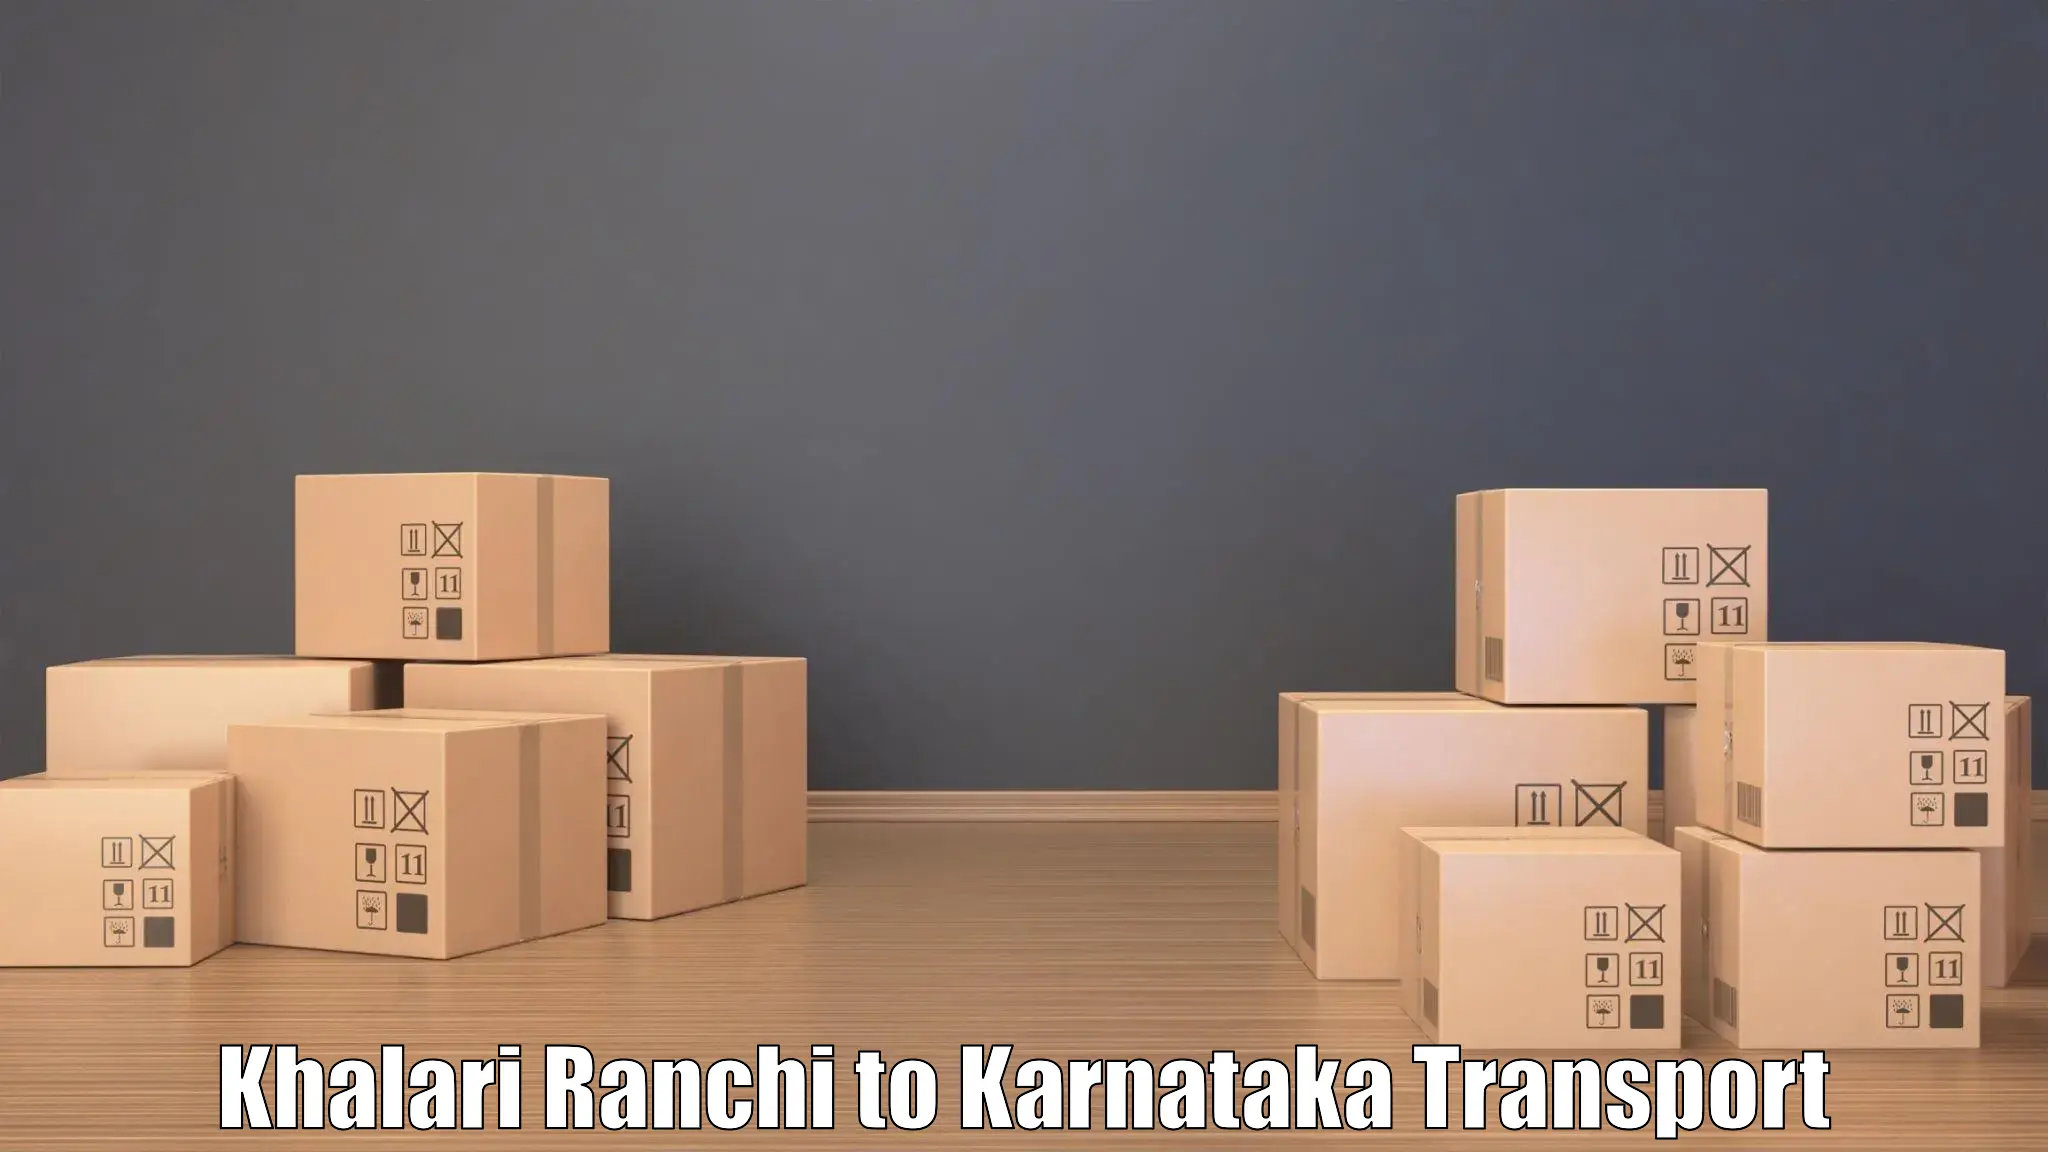 Online transport booking Khalari Ranchi to Sindhanur